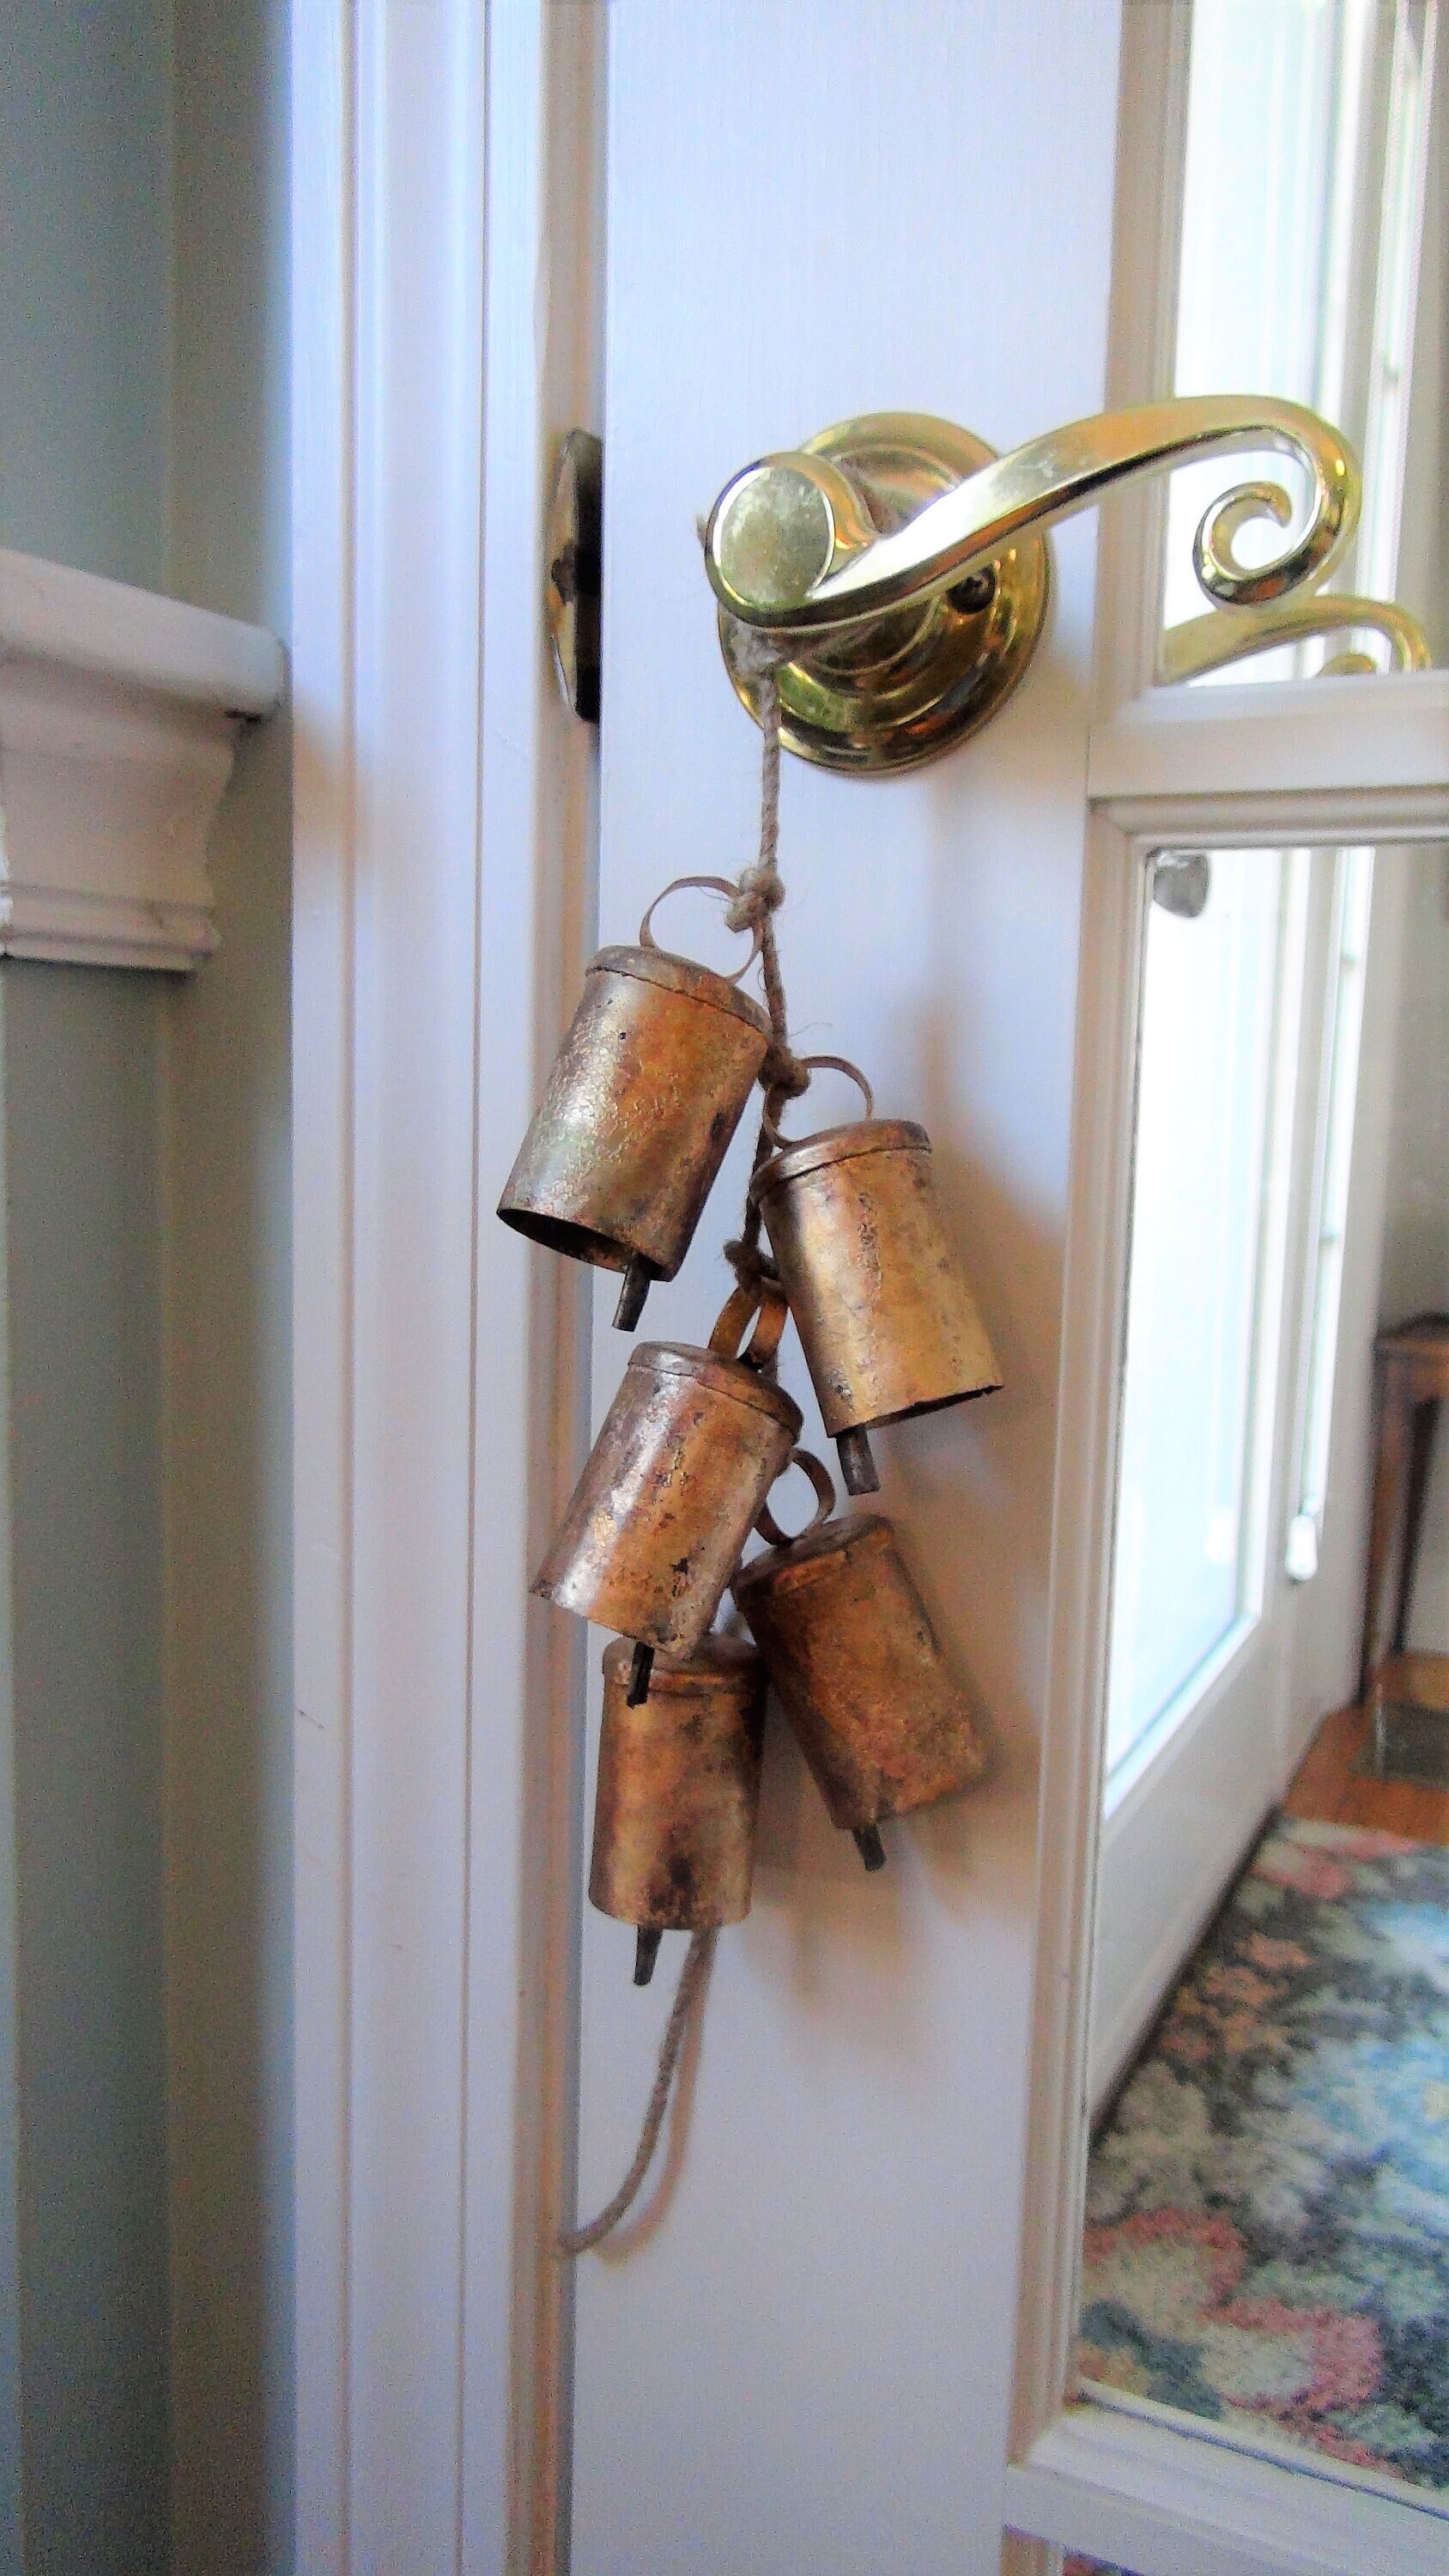 2 1/2 Domed Top Noah Bells Rustic Holiday Craft Bells 5 Gold Bells